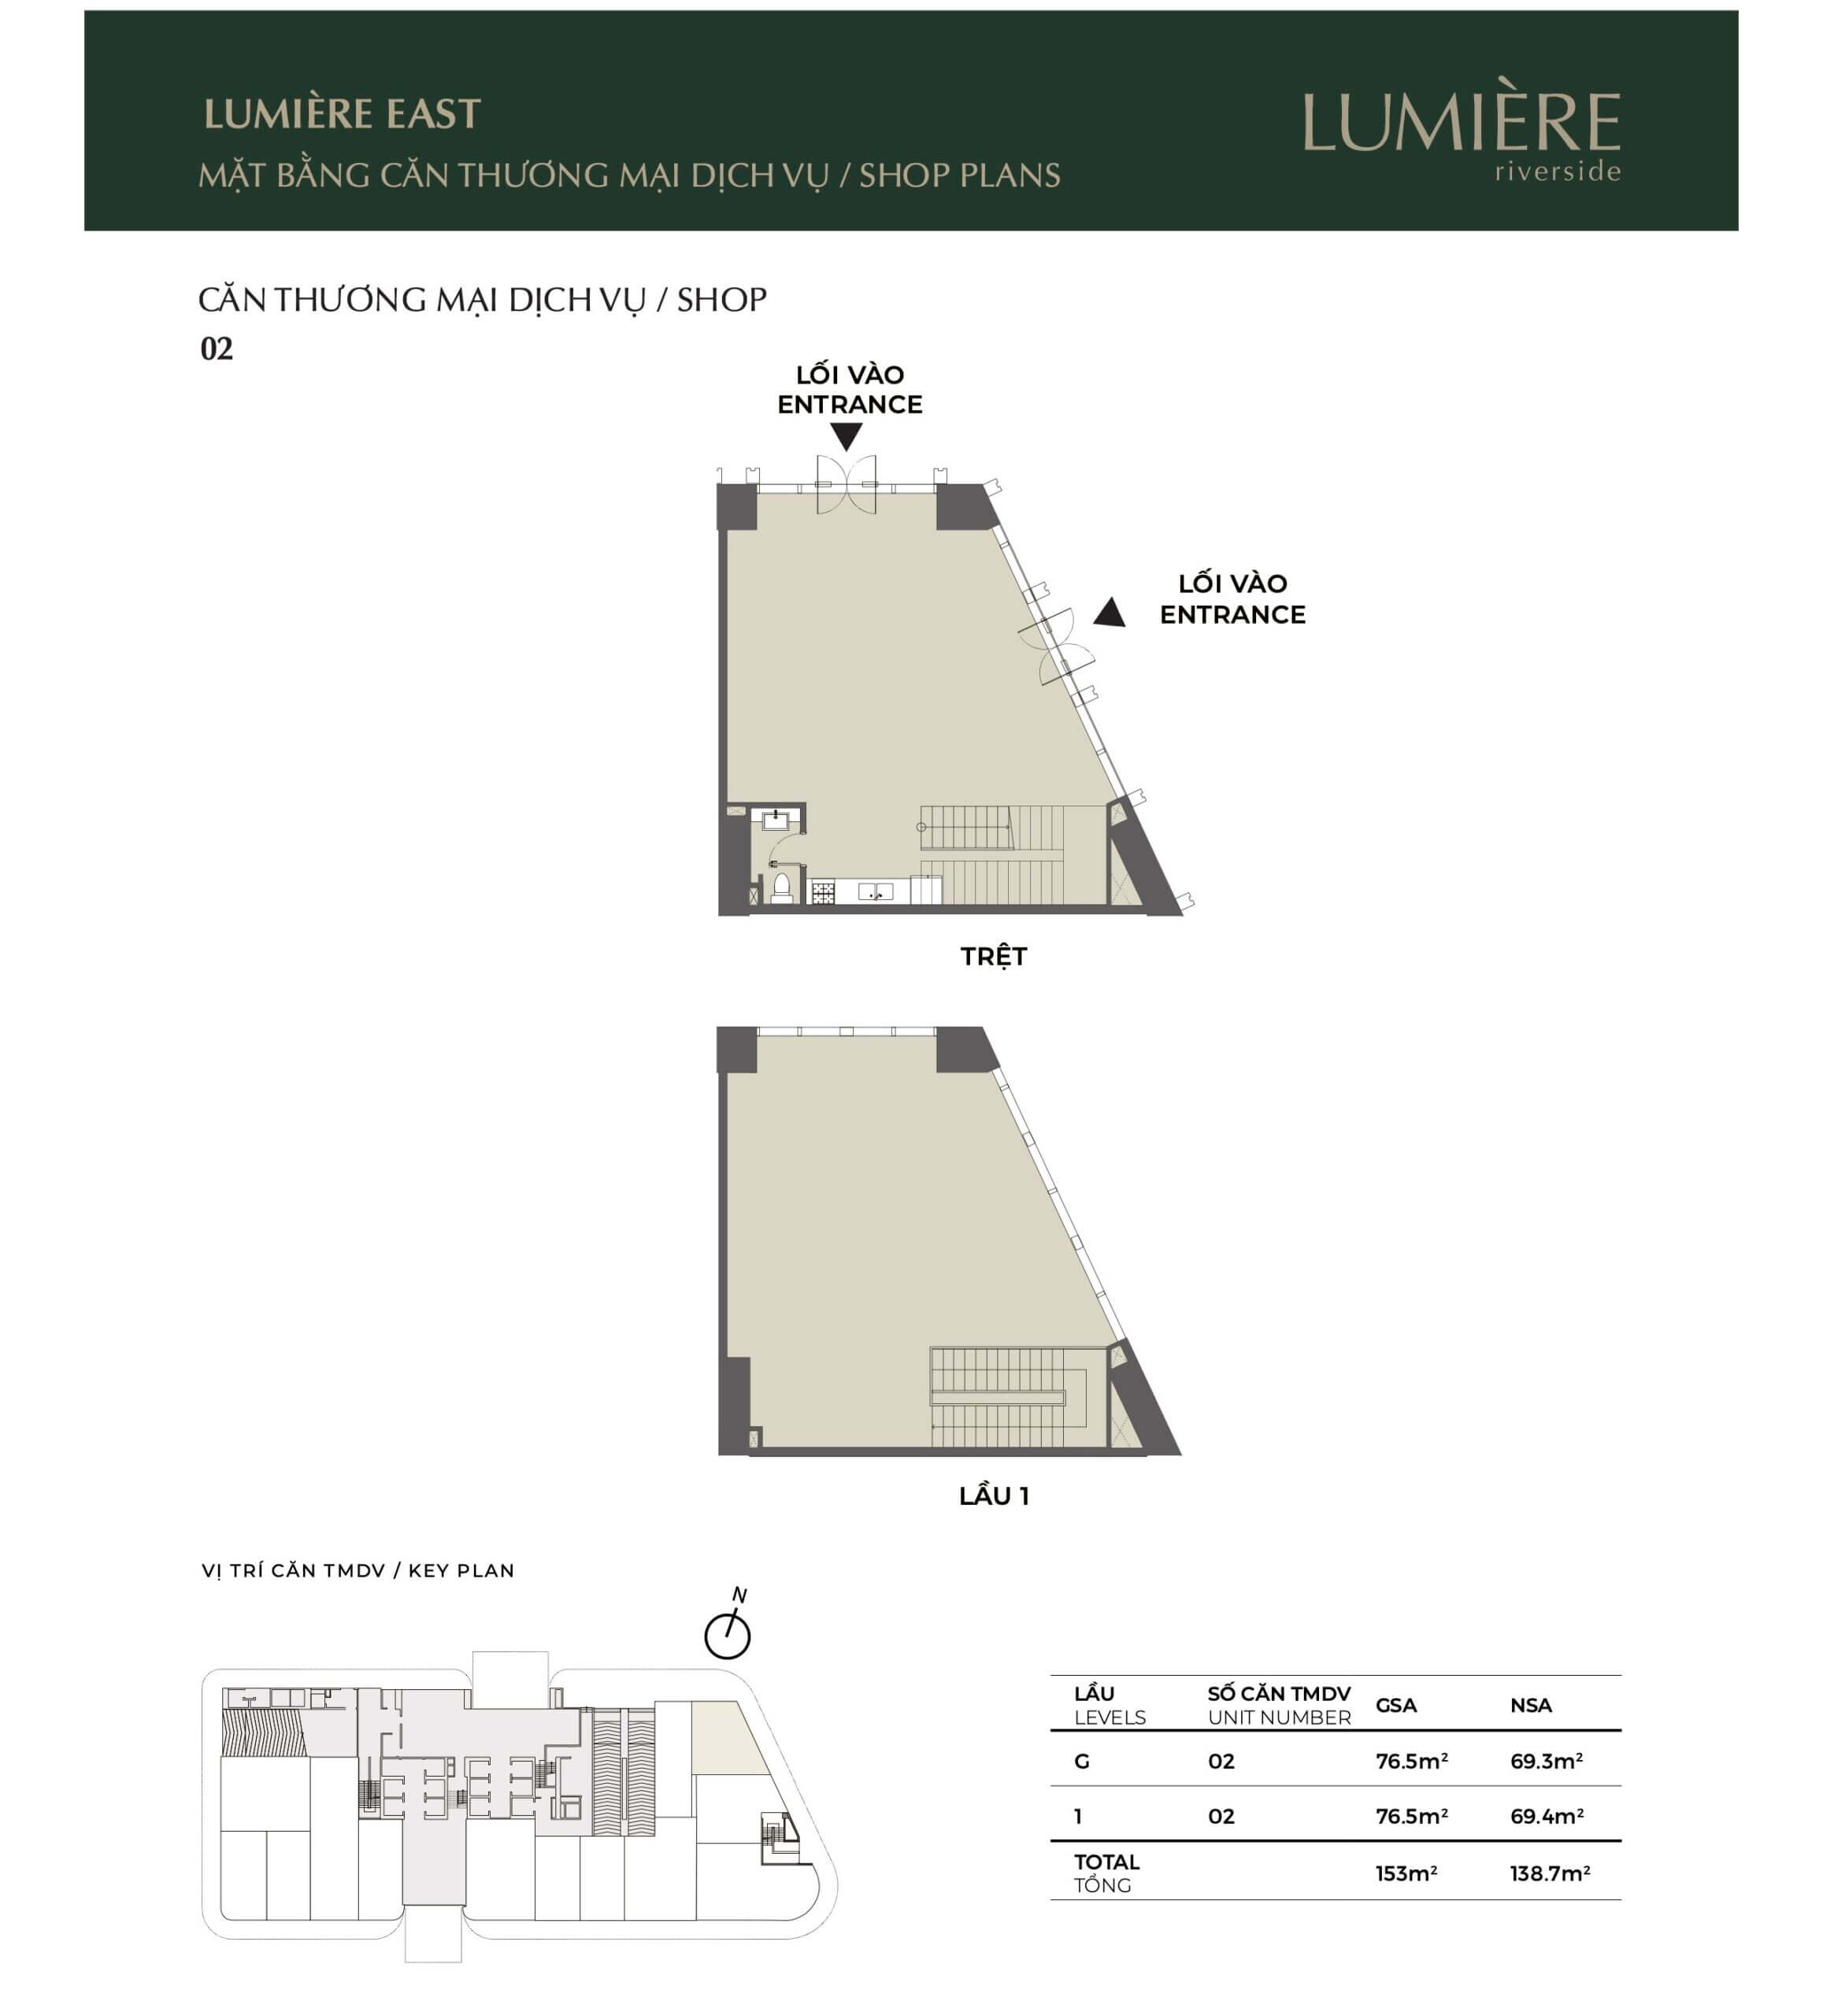 Mặt bằng layout shophouse Lumiere Riverside tháp East căn số 02 - cho thuê chuyển nhượng mua bán căn hộ Lumiere Riverside - Lumiere Quận 2 - Lumiere Thảo Điền